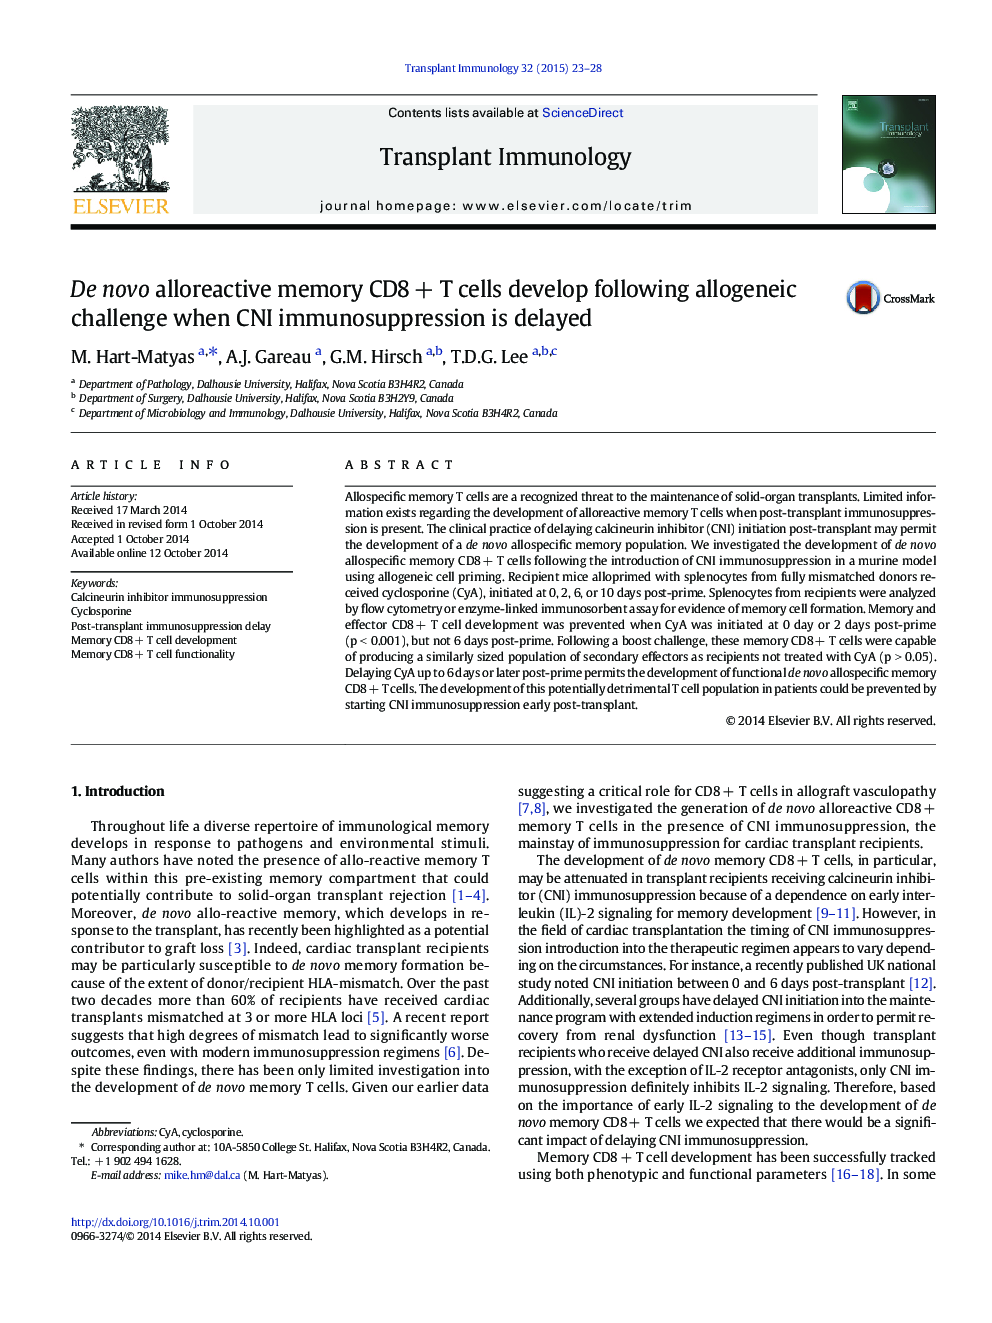 De novo alloreactive memory CD8 + T cells develop following allogeneic challenge when CNI immunosuppression is delayed